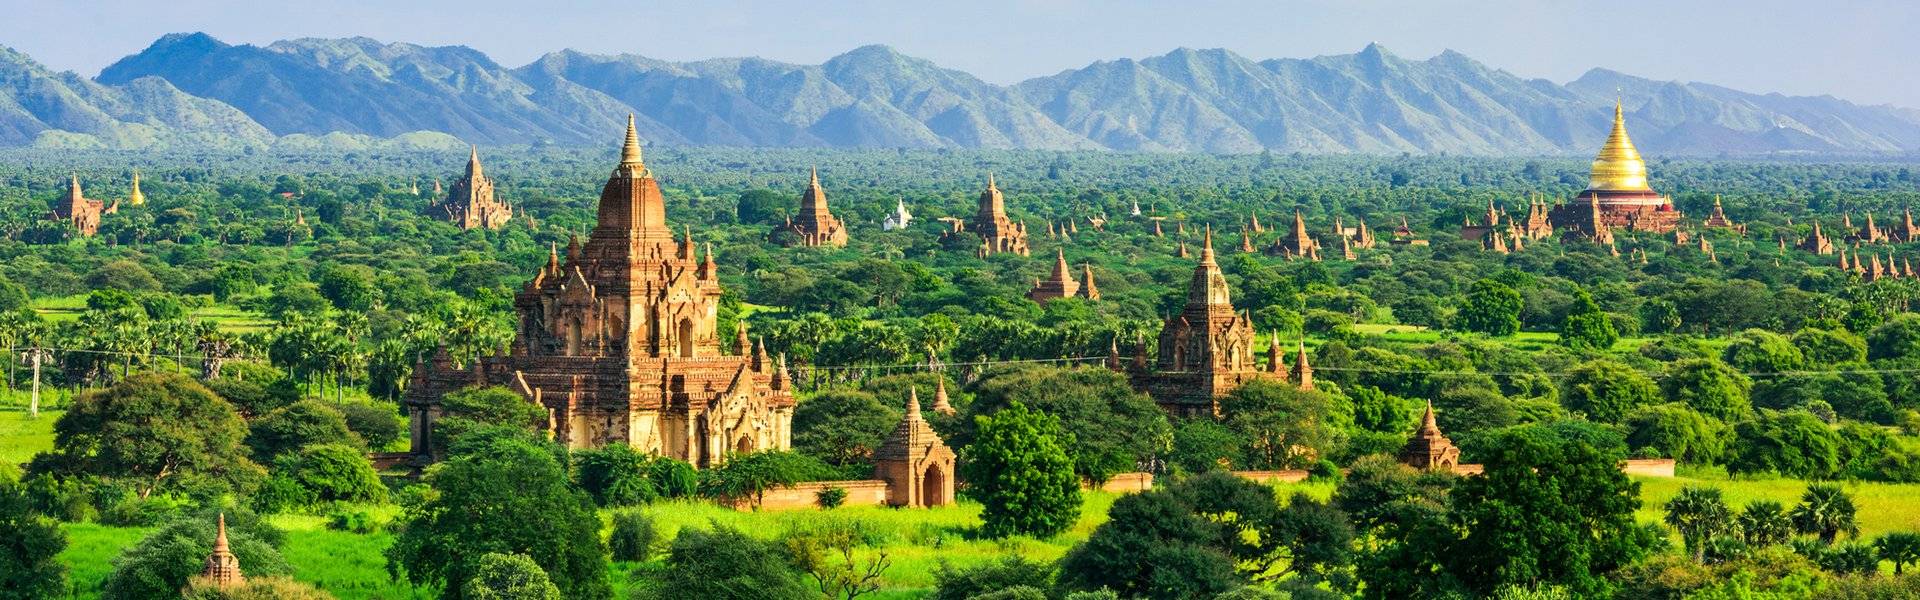 Бюджет нашей поездки в мьянму. сколько стоит посмотреть страну 5000 храмов и отдохнуть 10 дней на отличном пляже | лягушка-путешественница | дзен